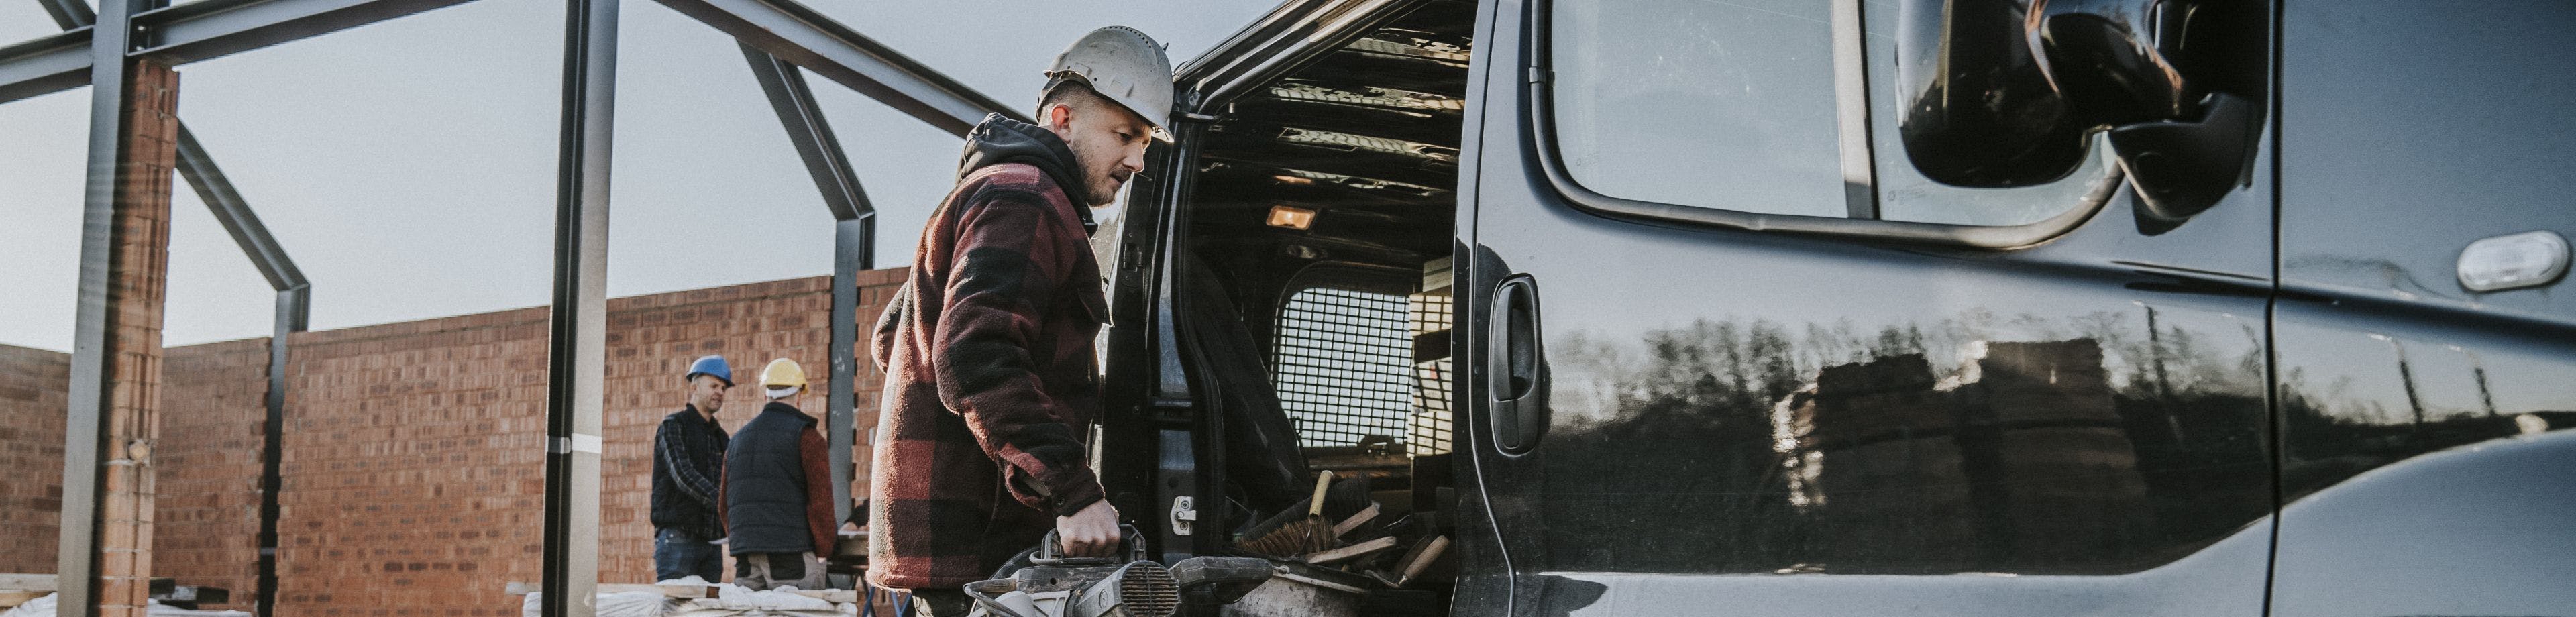 Een man met een bouwhelm op zijn hoofd laadt spullen in een bedrijfswagen.